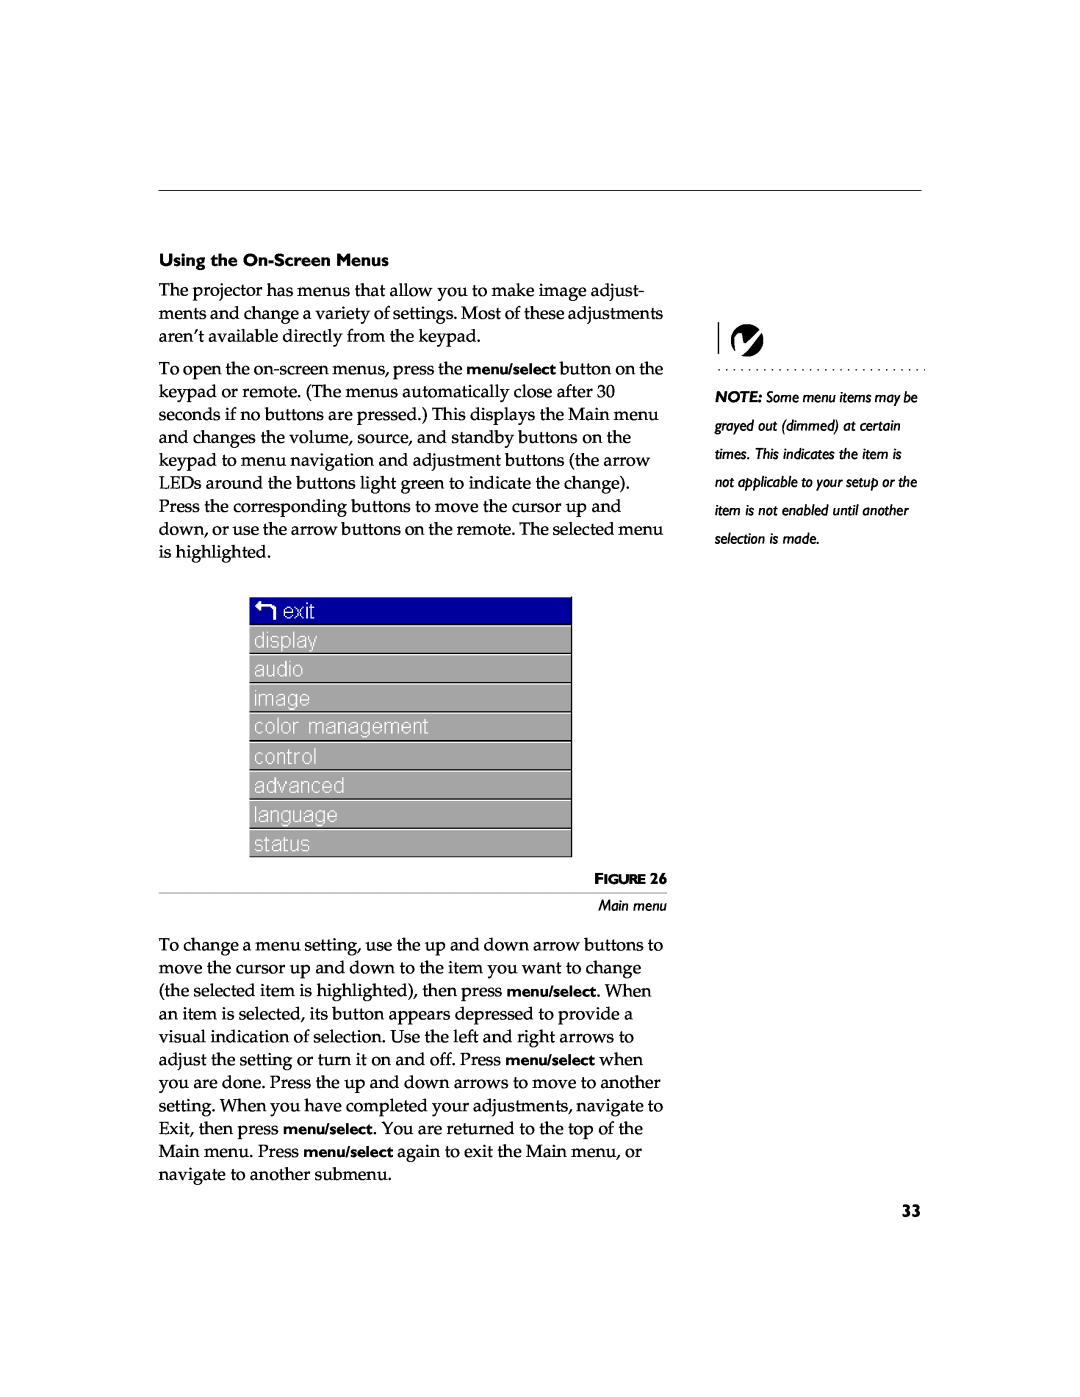 BOXLIGHT 12SF manual Using the On-Screen Menus, Main menu 